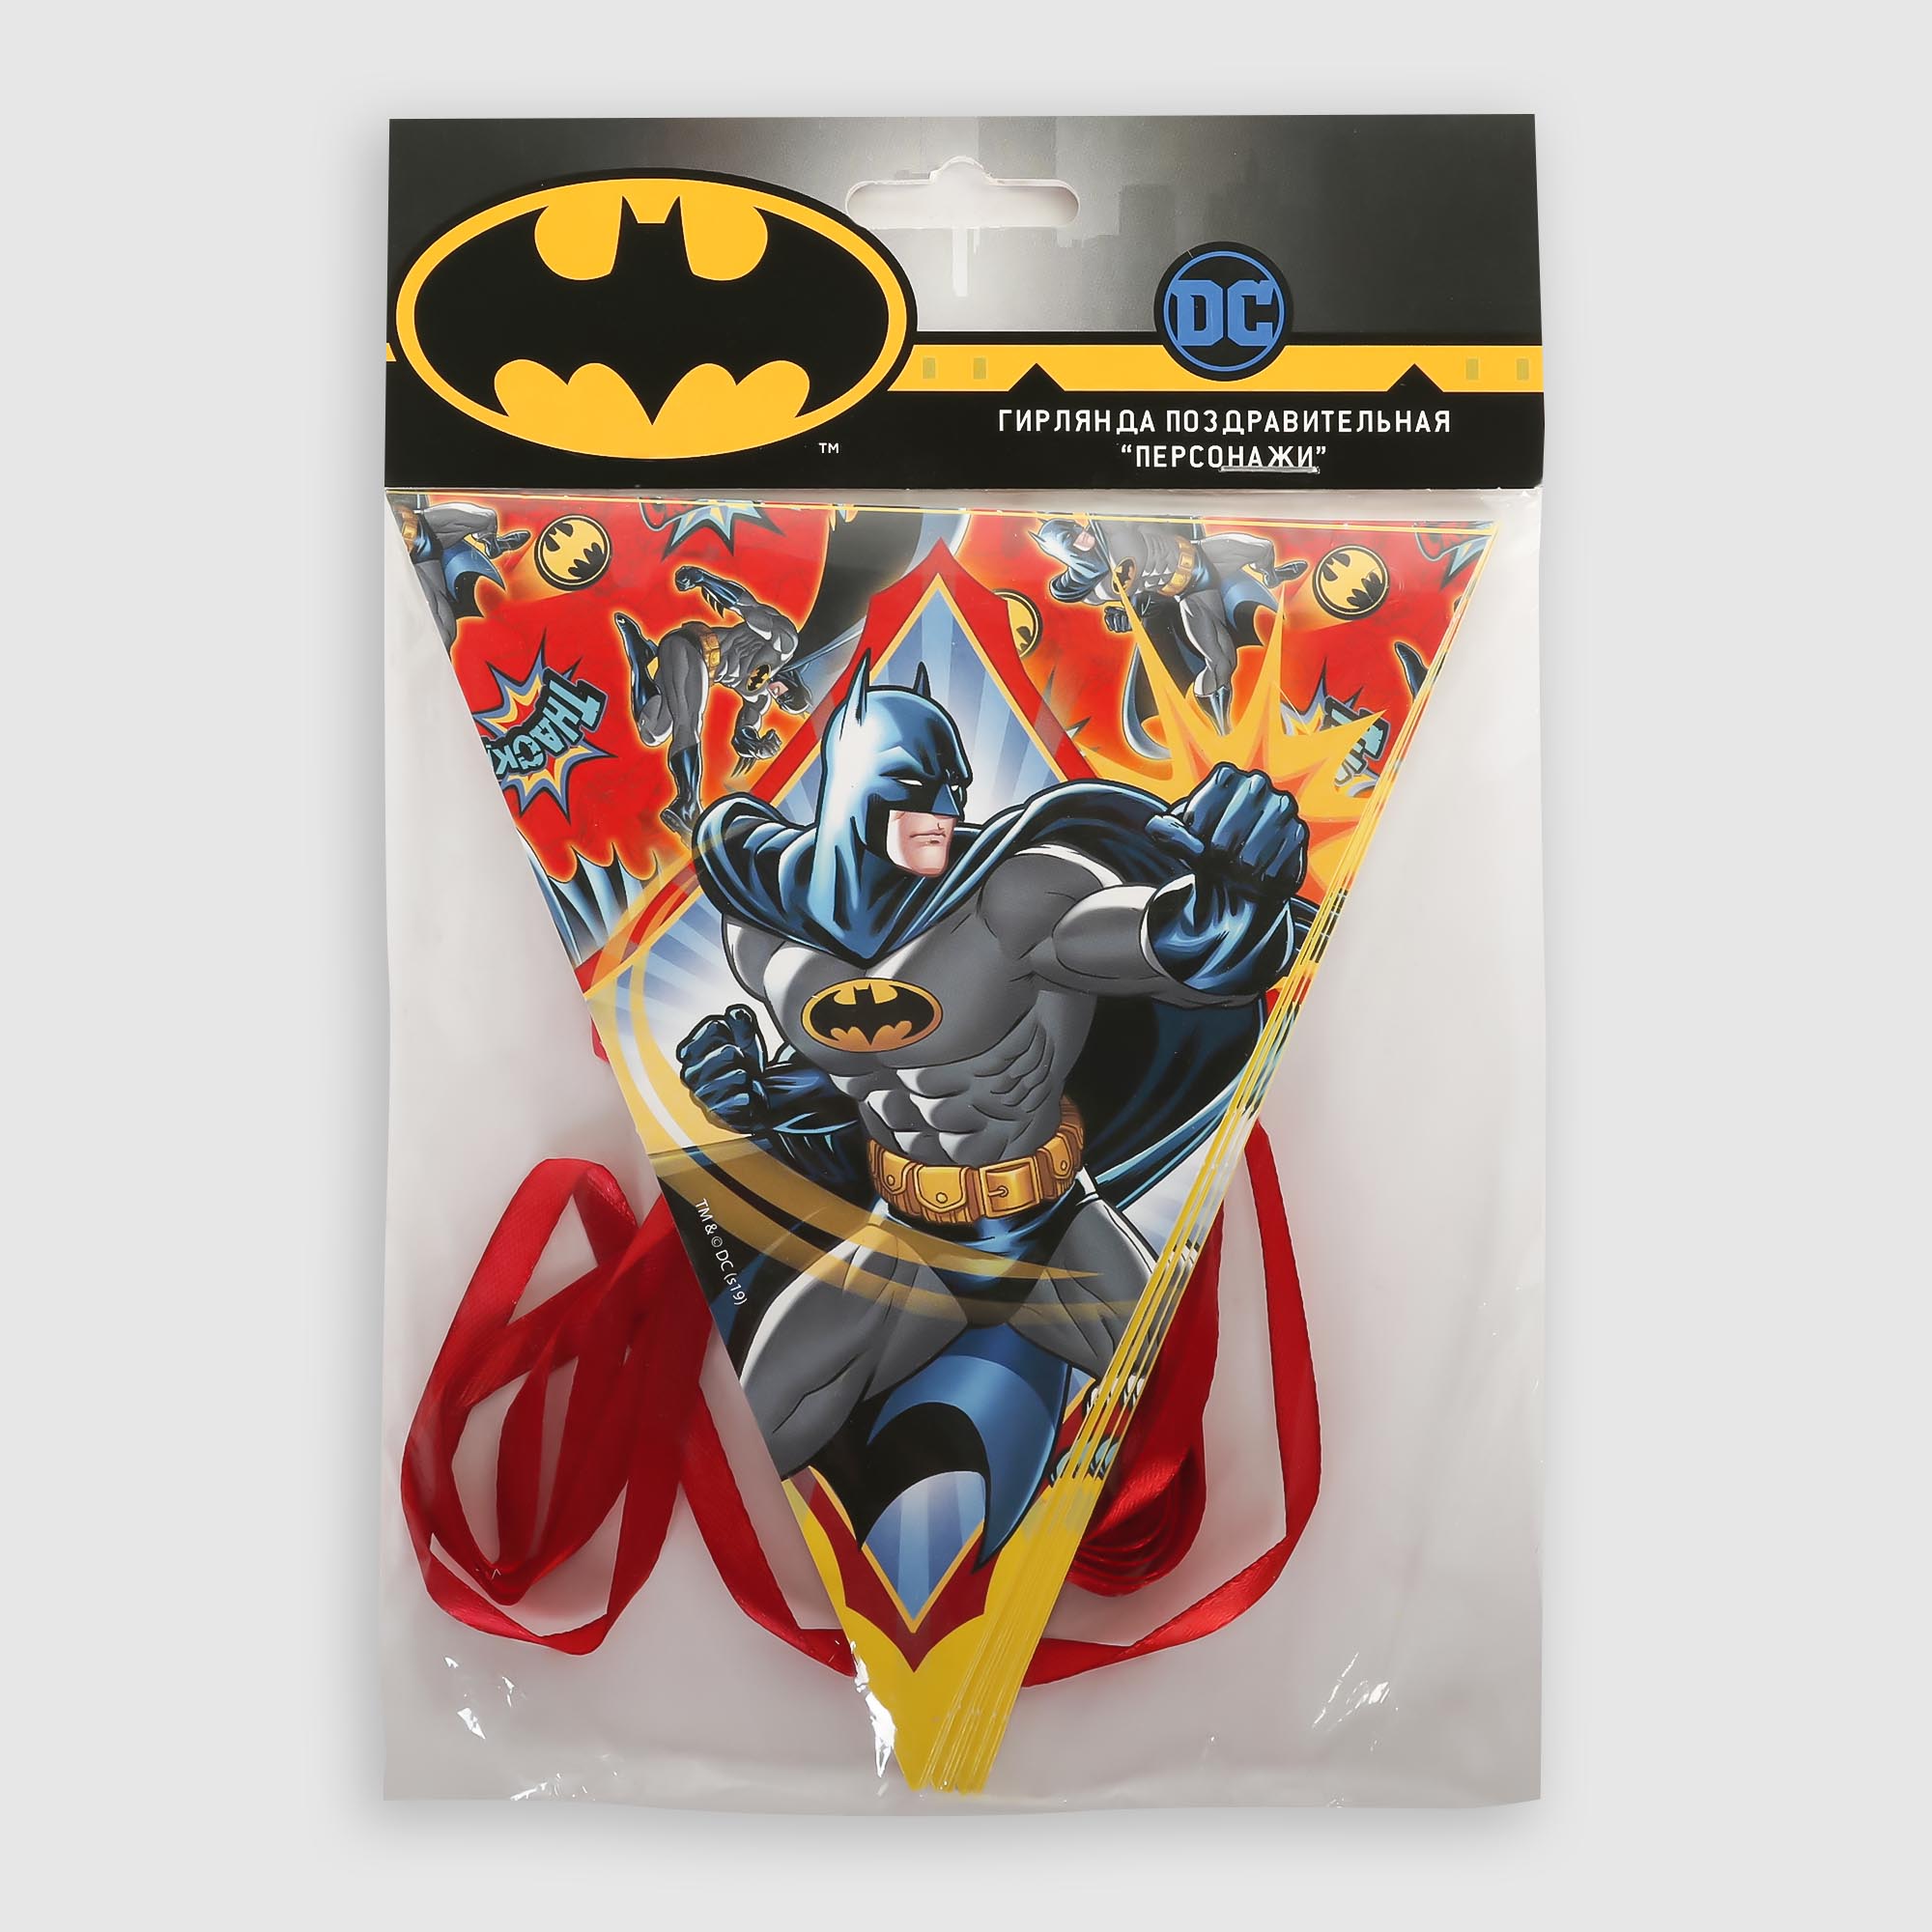 Гирлянда поздравительная ND Play персонаж Batman светодиодная лента для воздушного шара гирлянда 2 метра батарейка белый